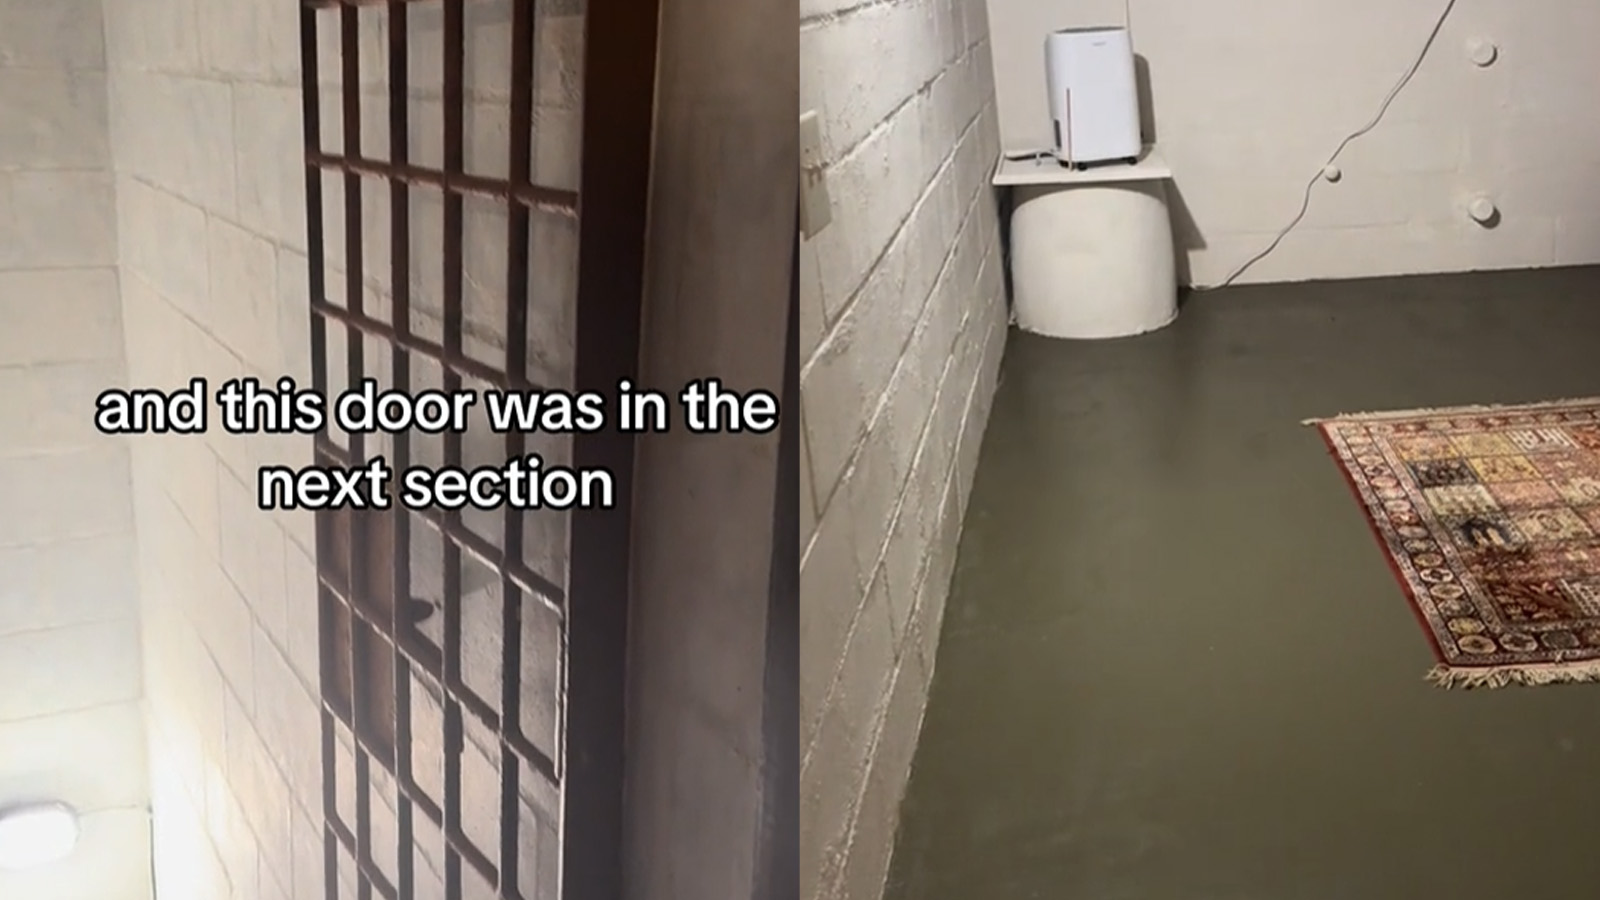 Real estate agent disturbed by hidden “dungeon” behind door in Florida home